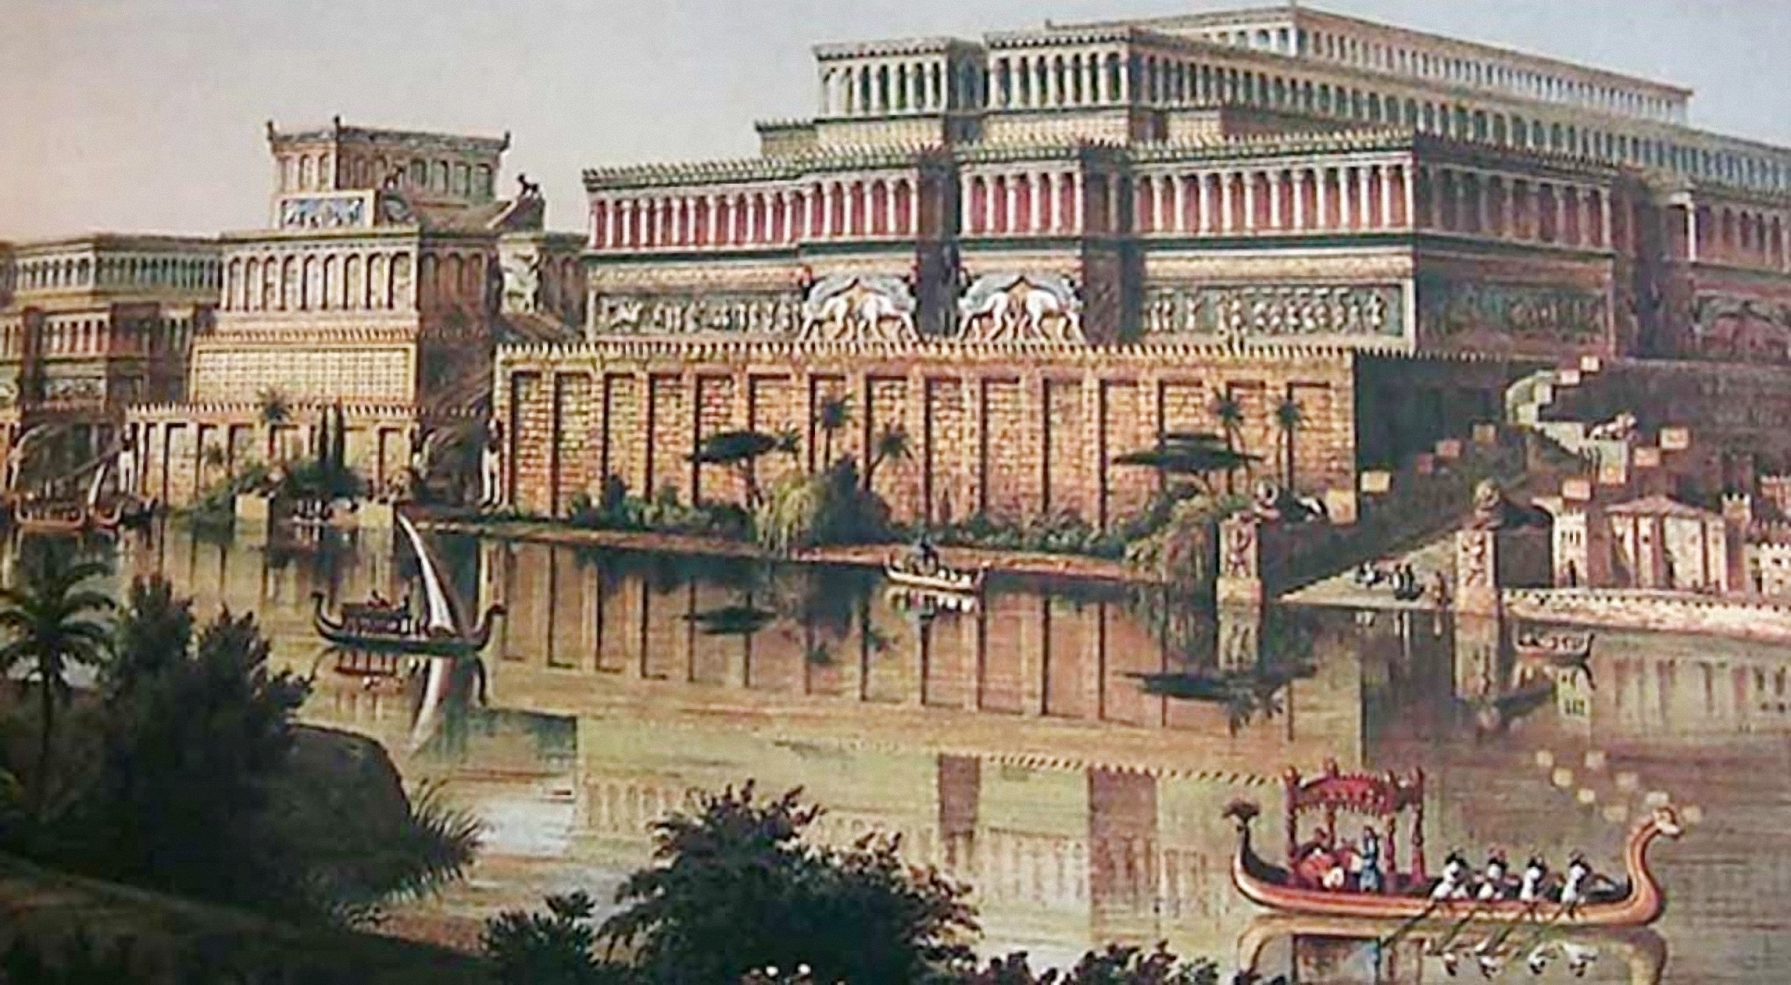 Cung điện của vua Ashurbanipal thời cổ đại. Ảnh: Ancient Origins.